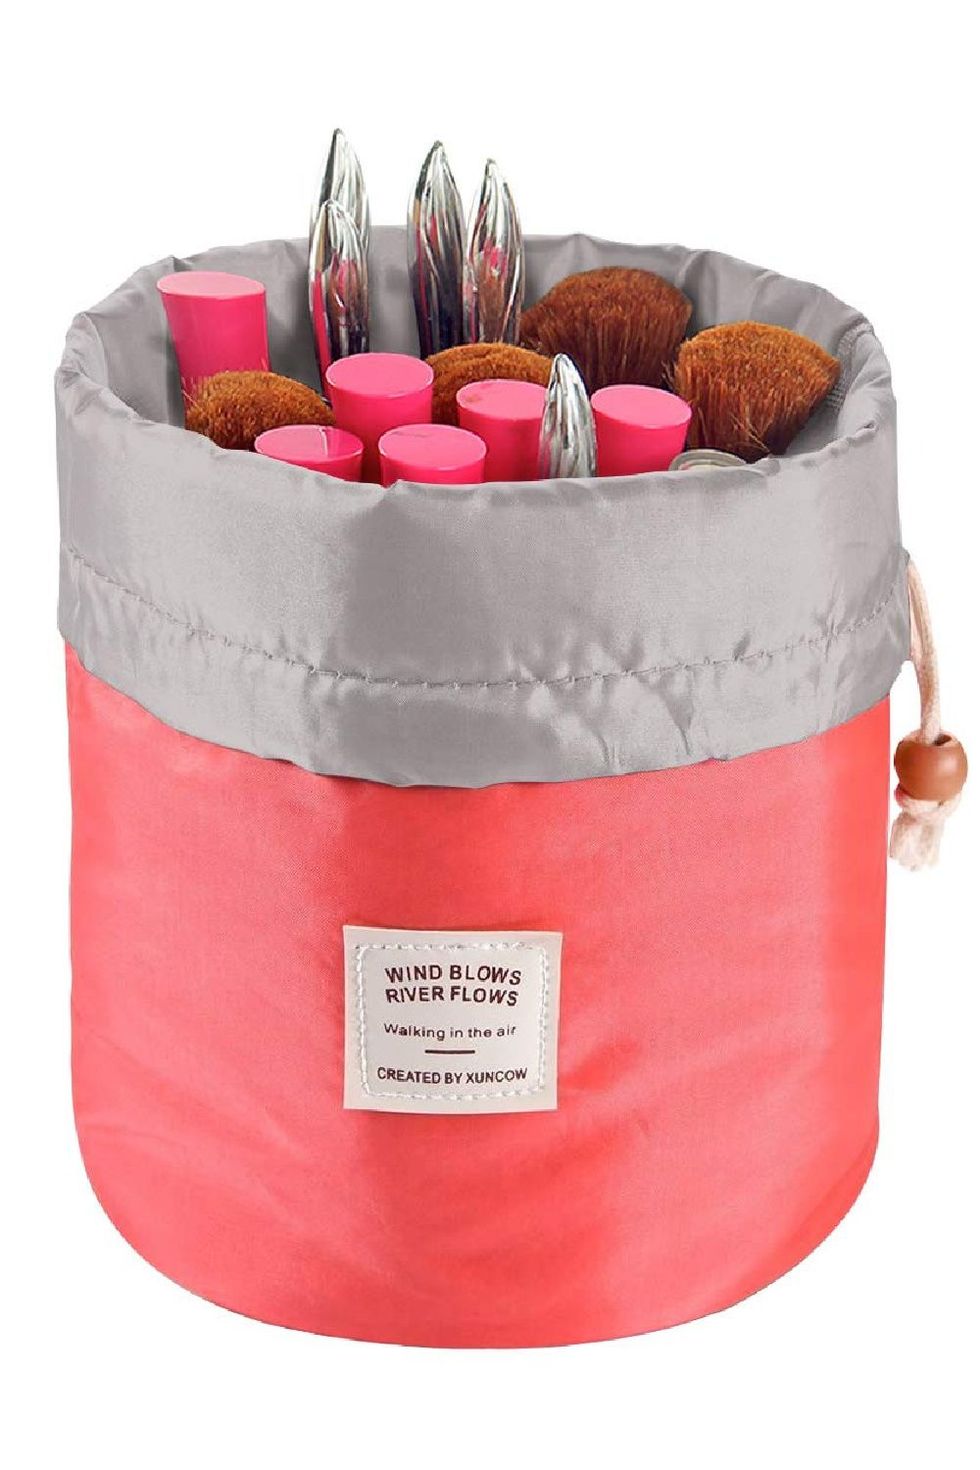 Euow Travel Cosmetic Bags Barrel Makeup Bag